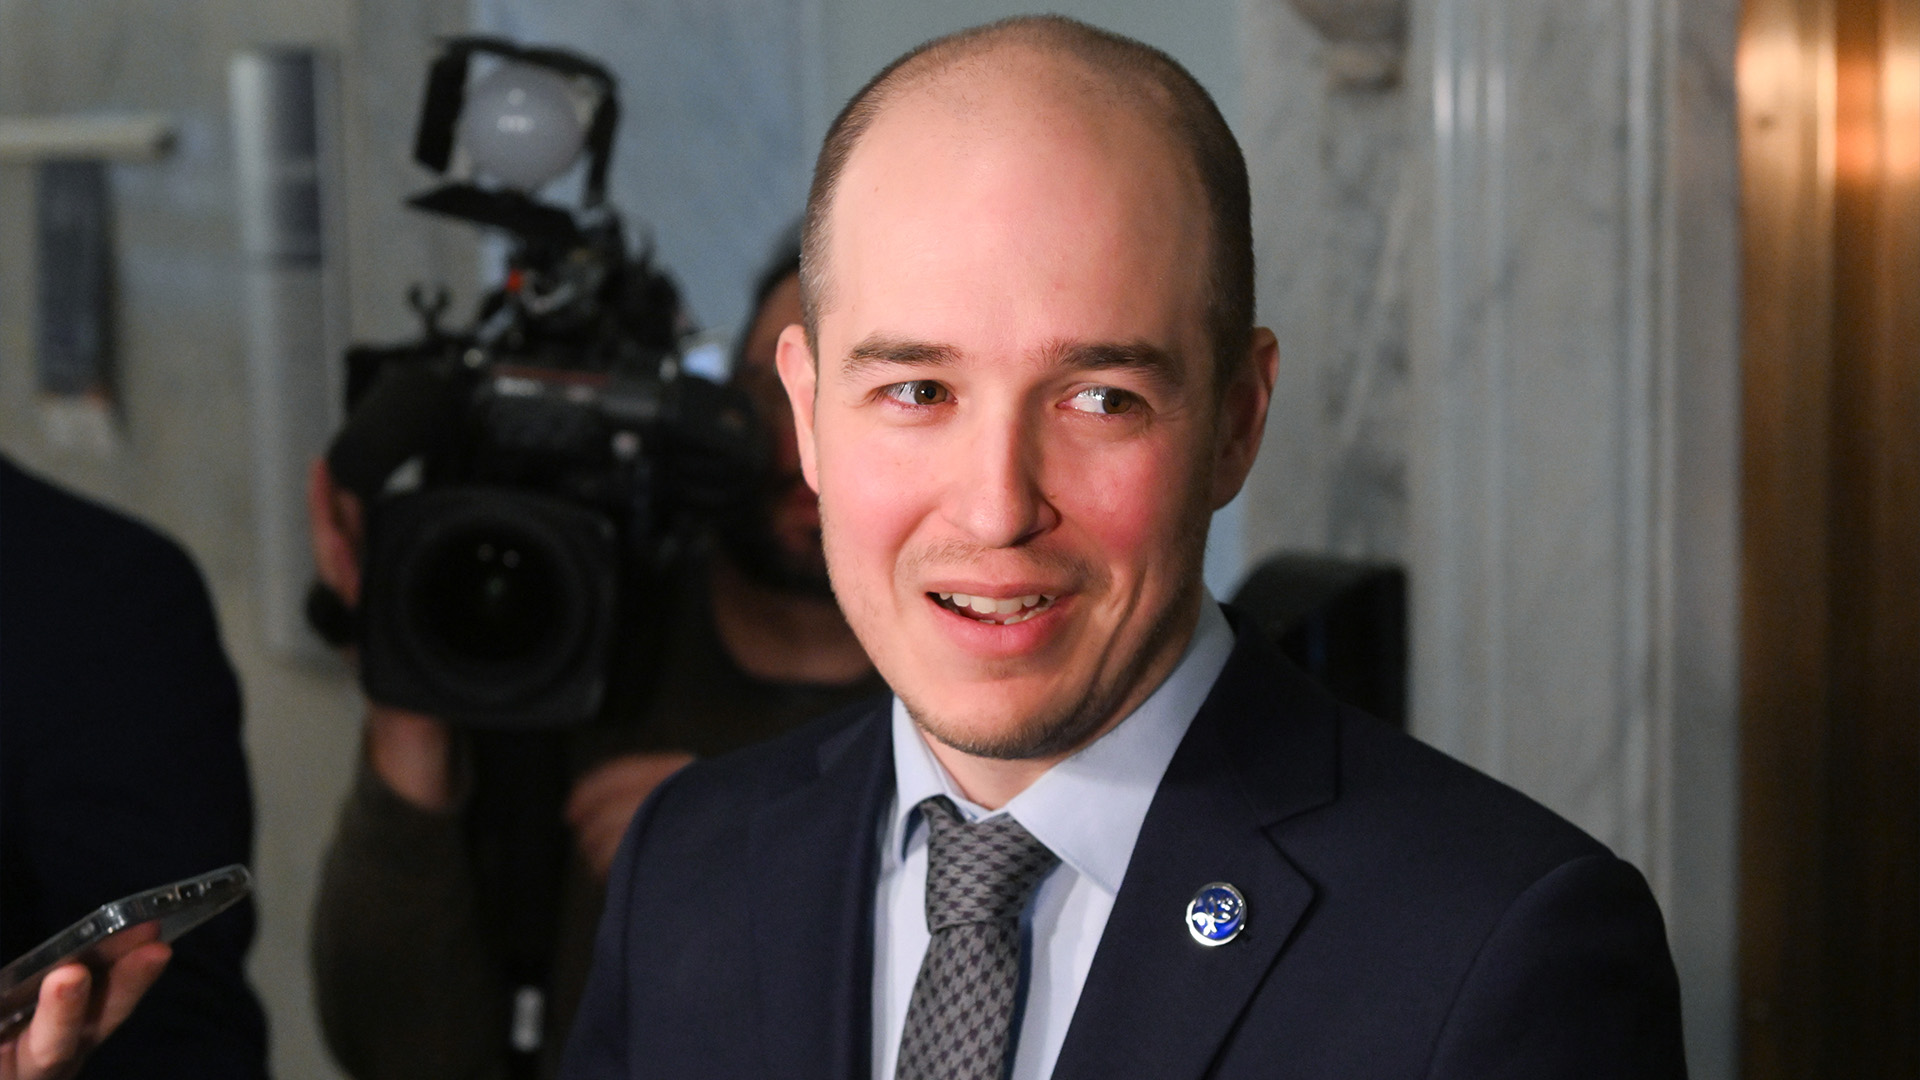 Le leader parlementaire de Québec solidaire, Alexandre Leduc, répond aux questions des journalistes le mercredi 2 novembre 2022 à l'Assemblée législative de Québec.